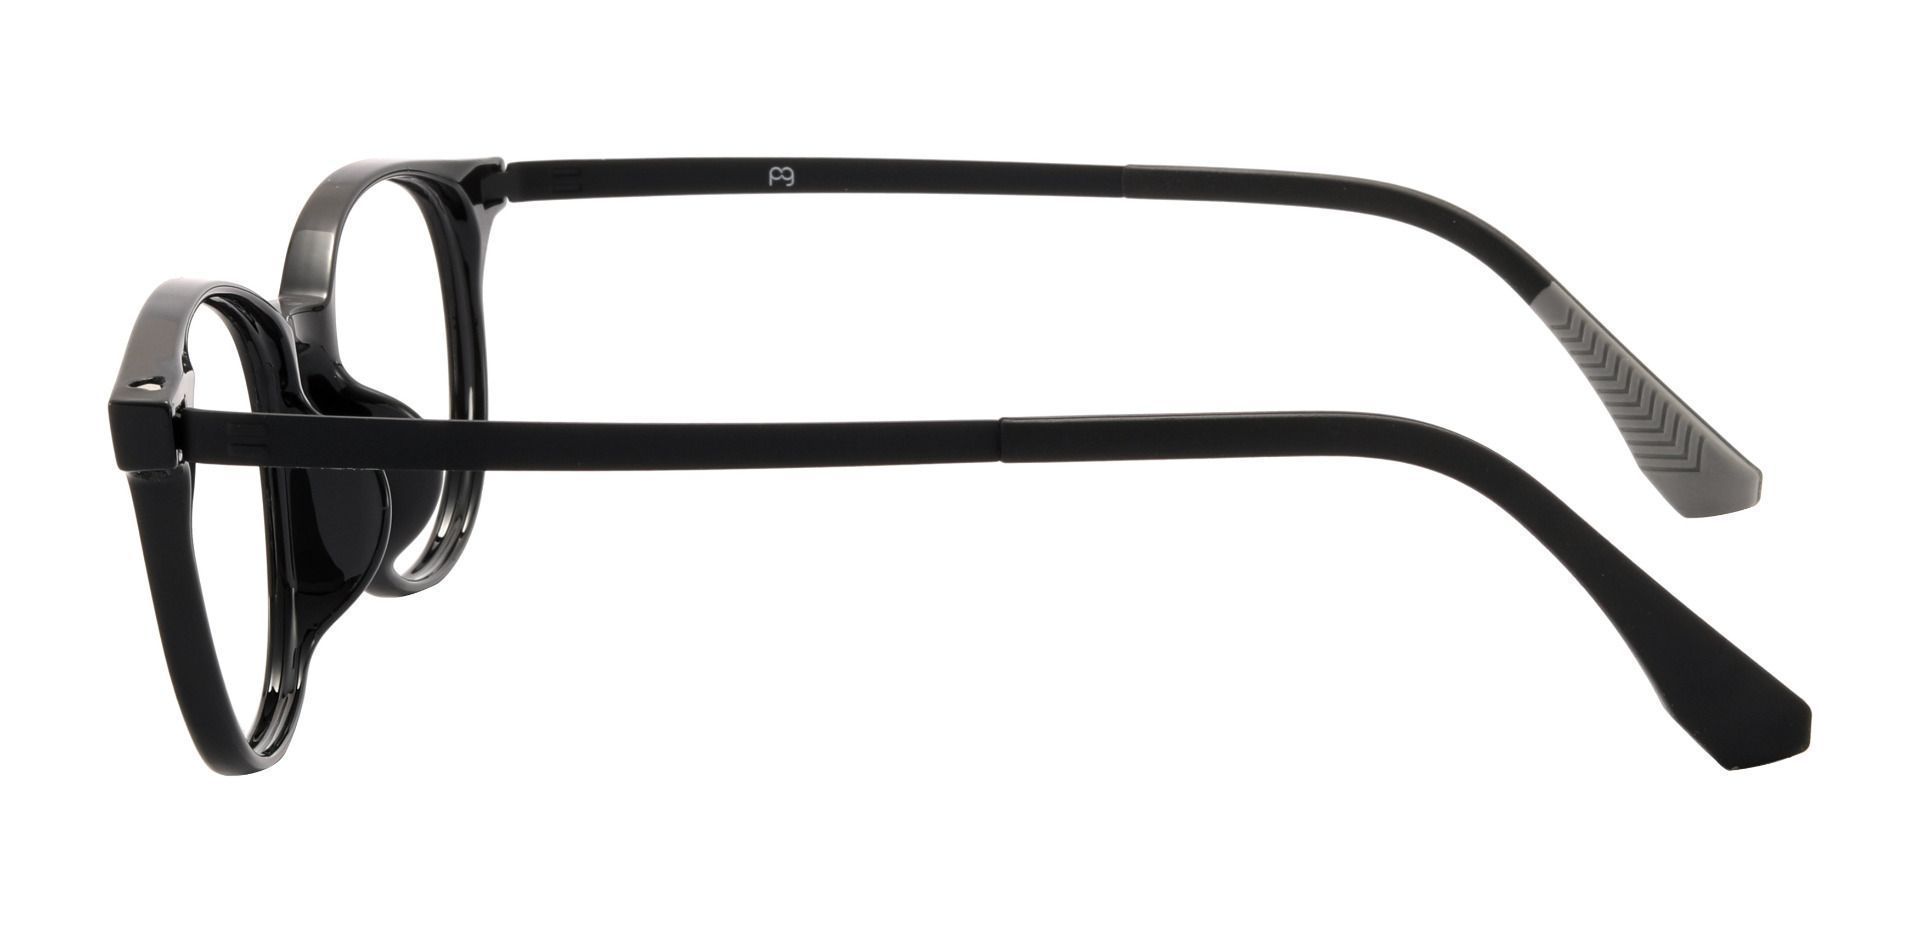 Hannigan Oval Prescription Glasses - Black